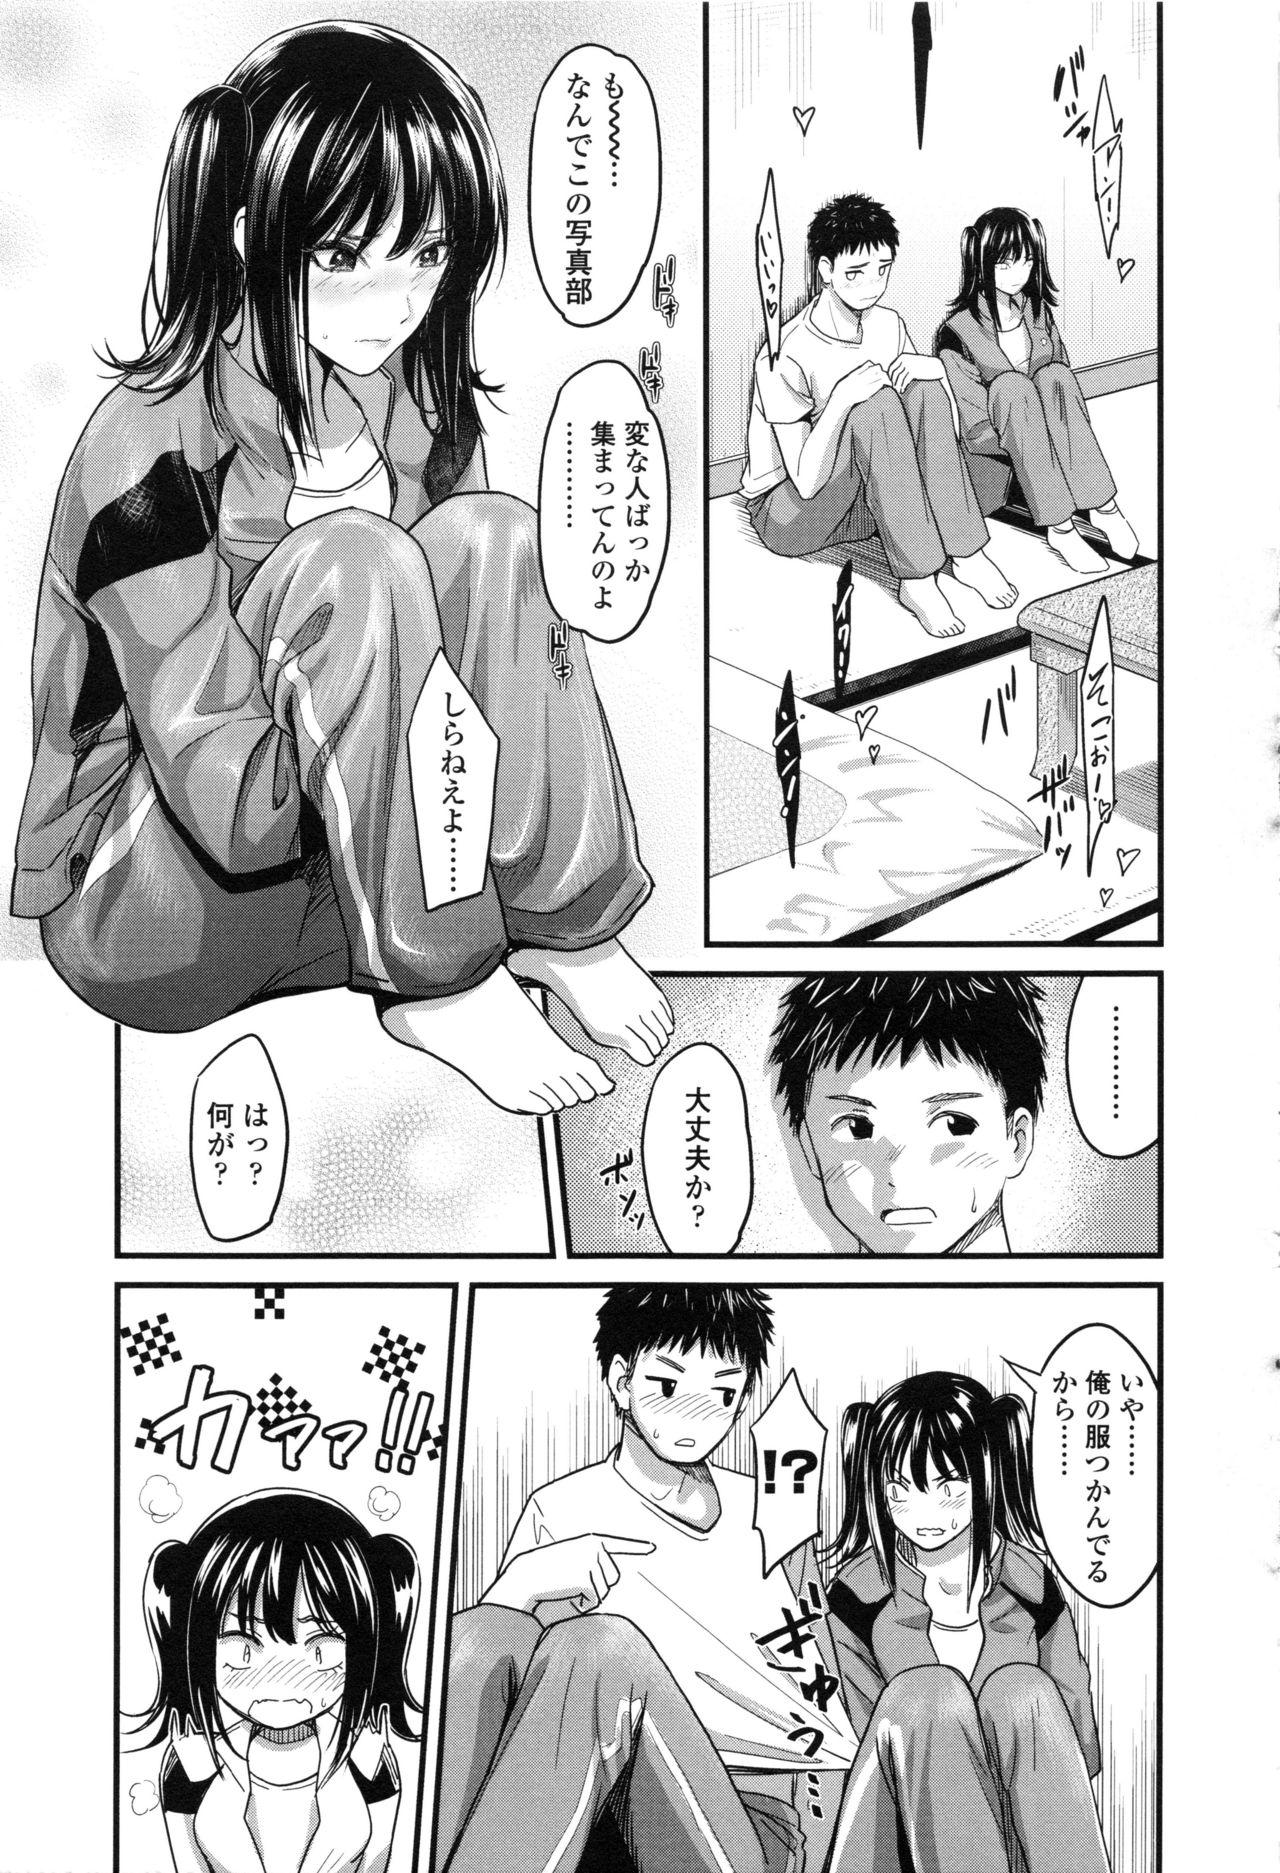 Seifuku no Mama Aishinasai! - Love in school uniform 156